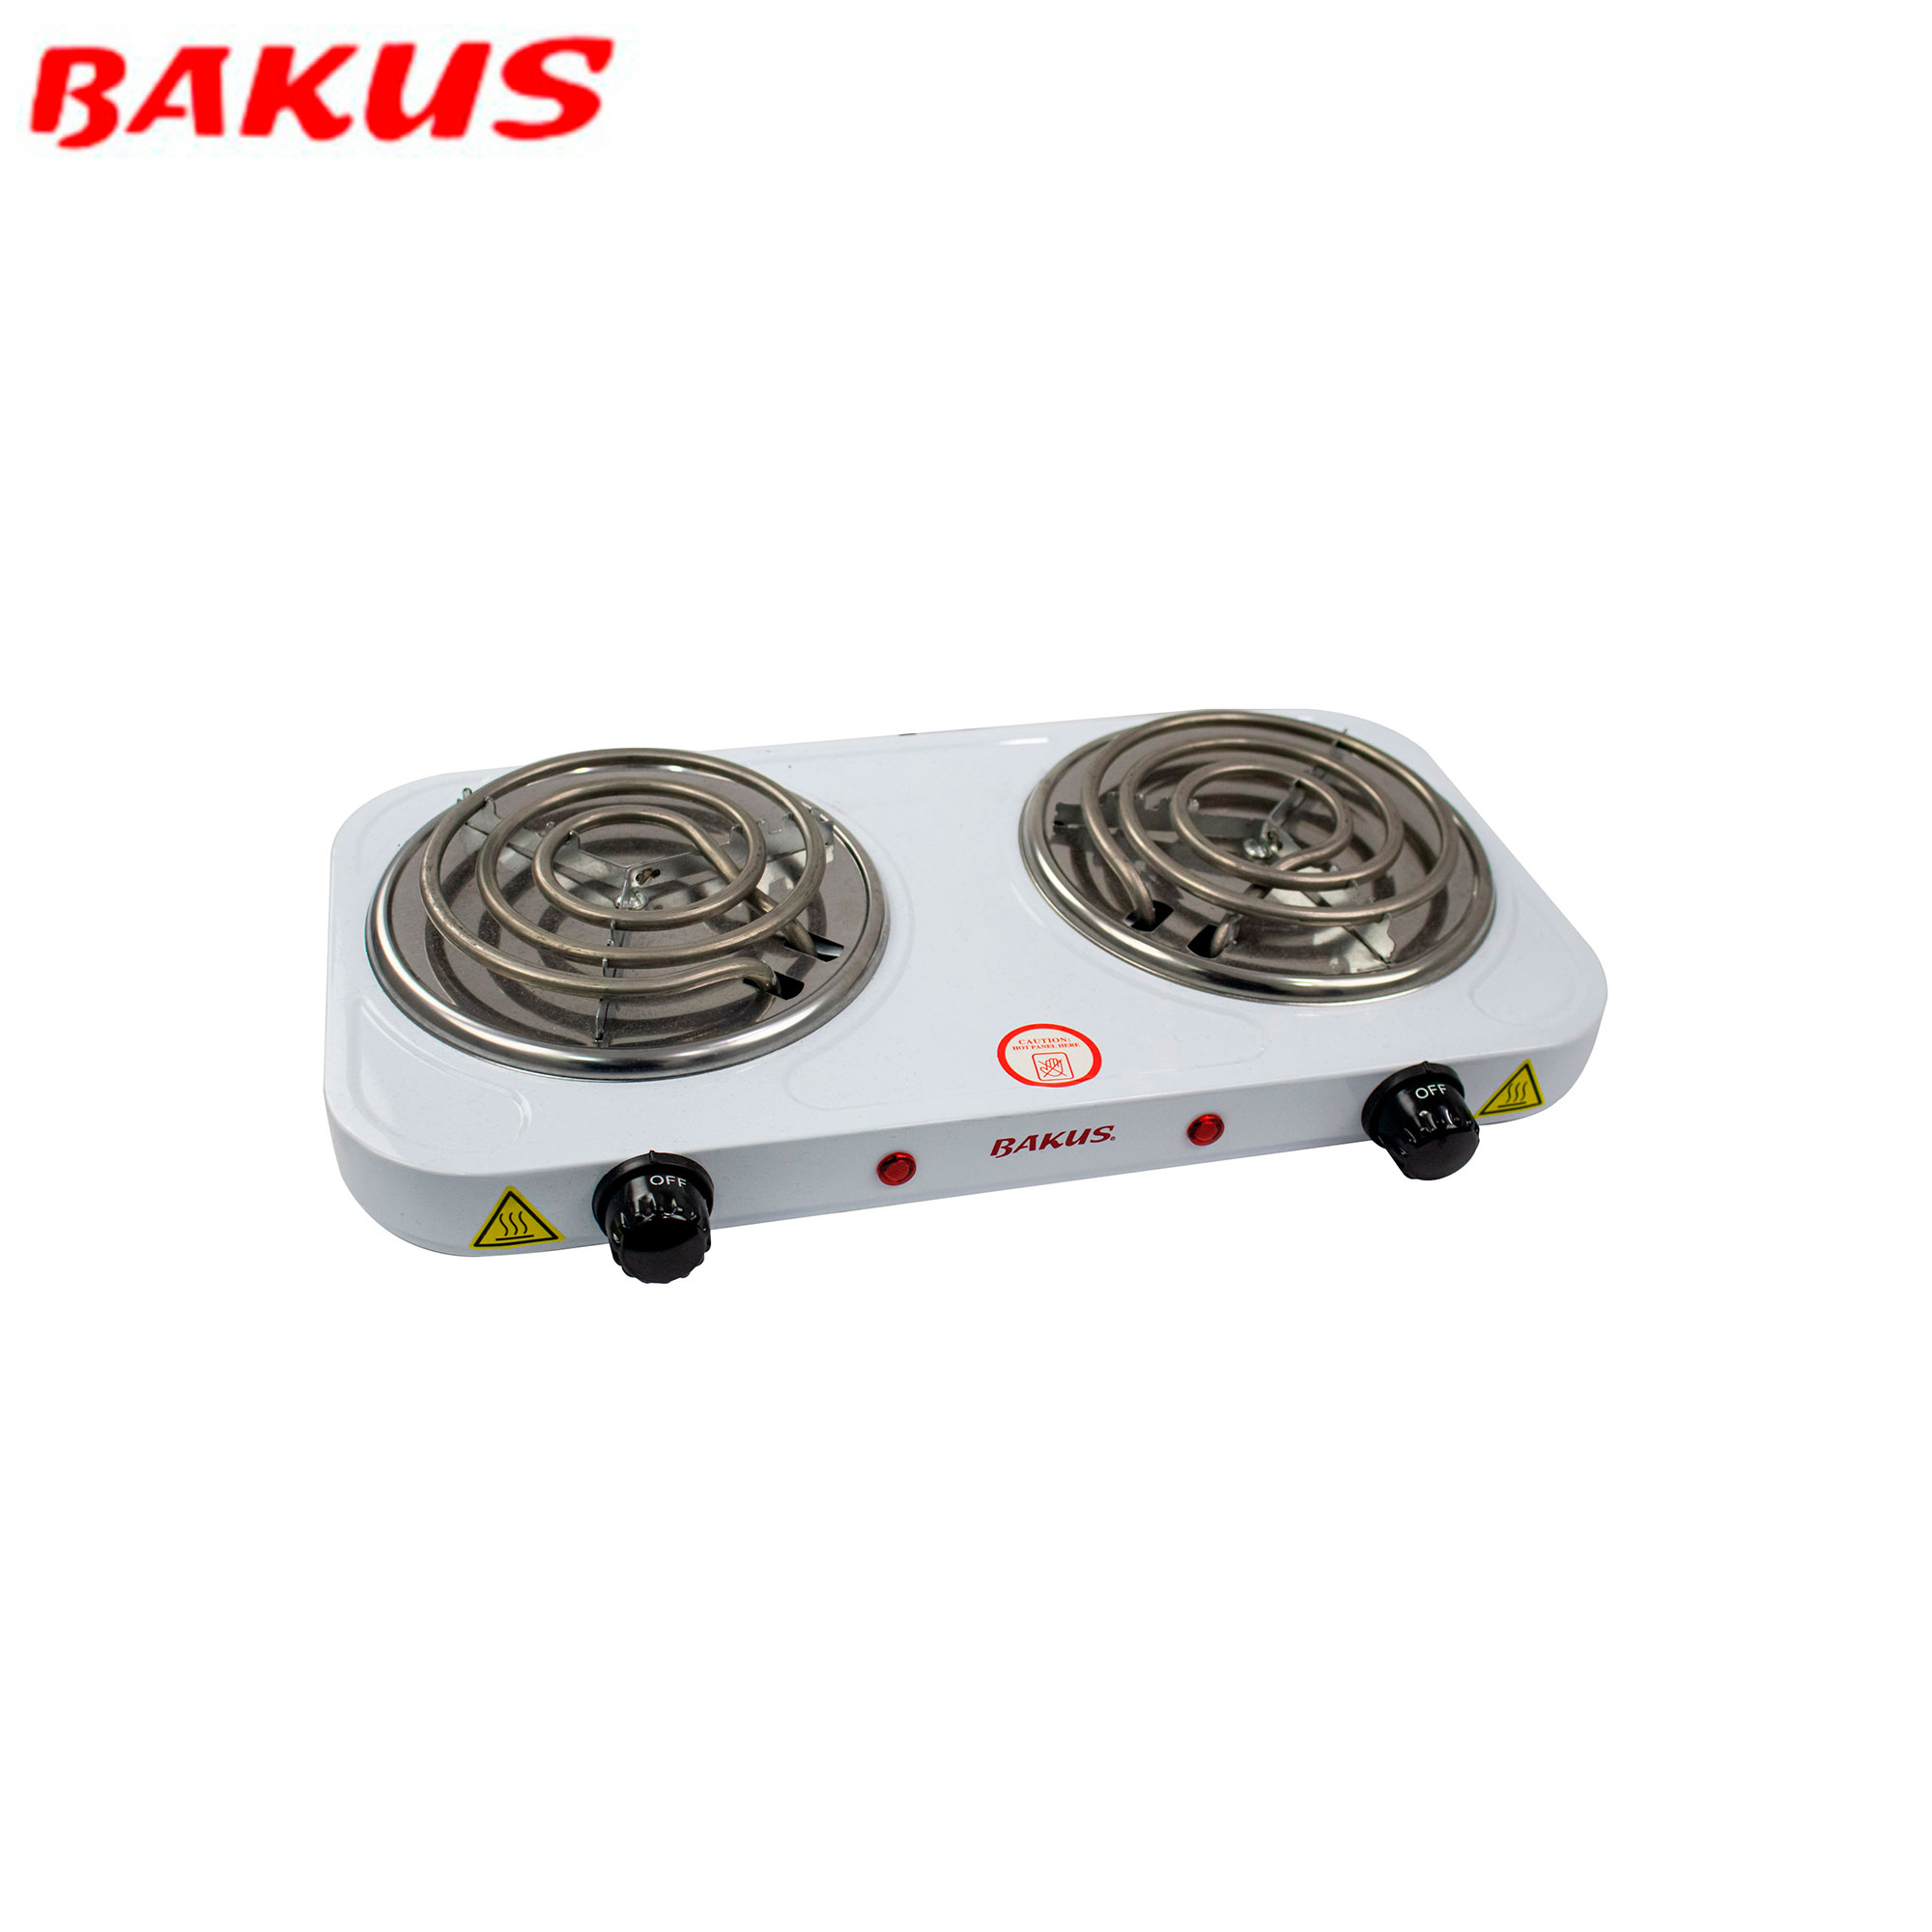 Cocina eléctrica 2 hornillas Bakus - Multimax Store